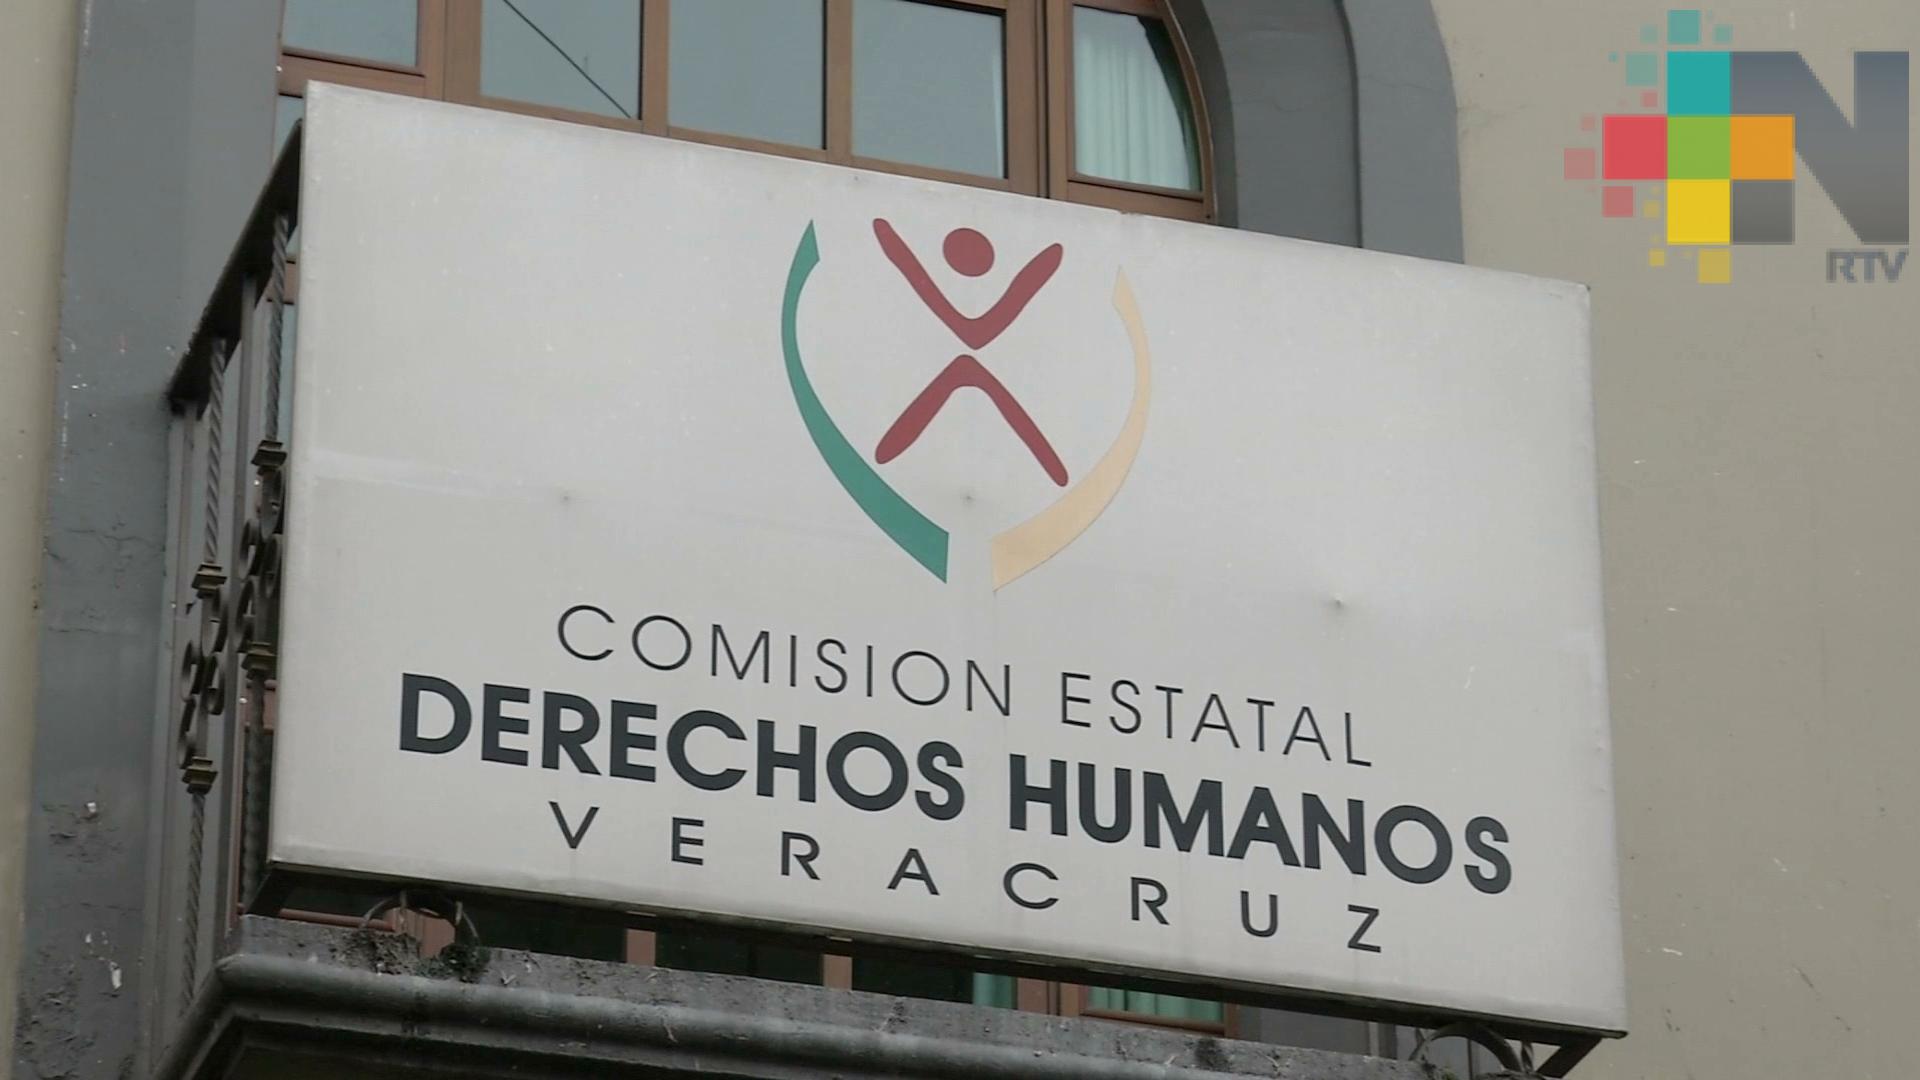 Atendiendo alerta preventiva en Veracruz, diversas dependencias suspenderán labores jueves y viernes